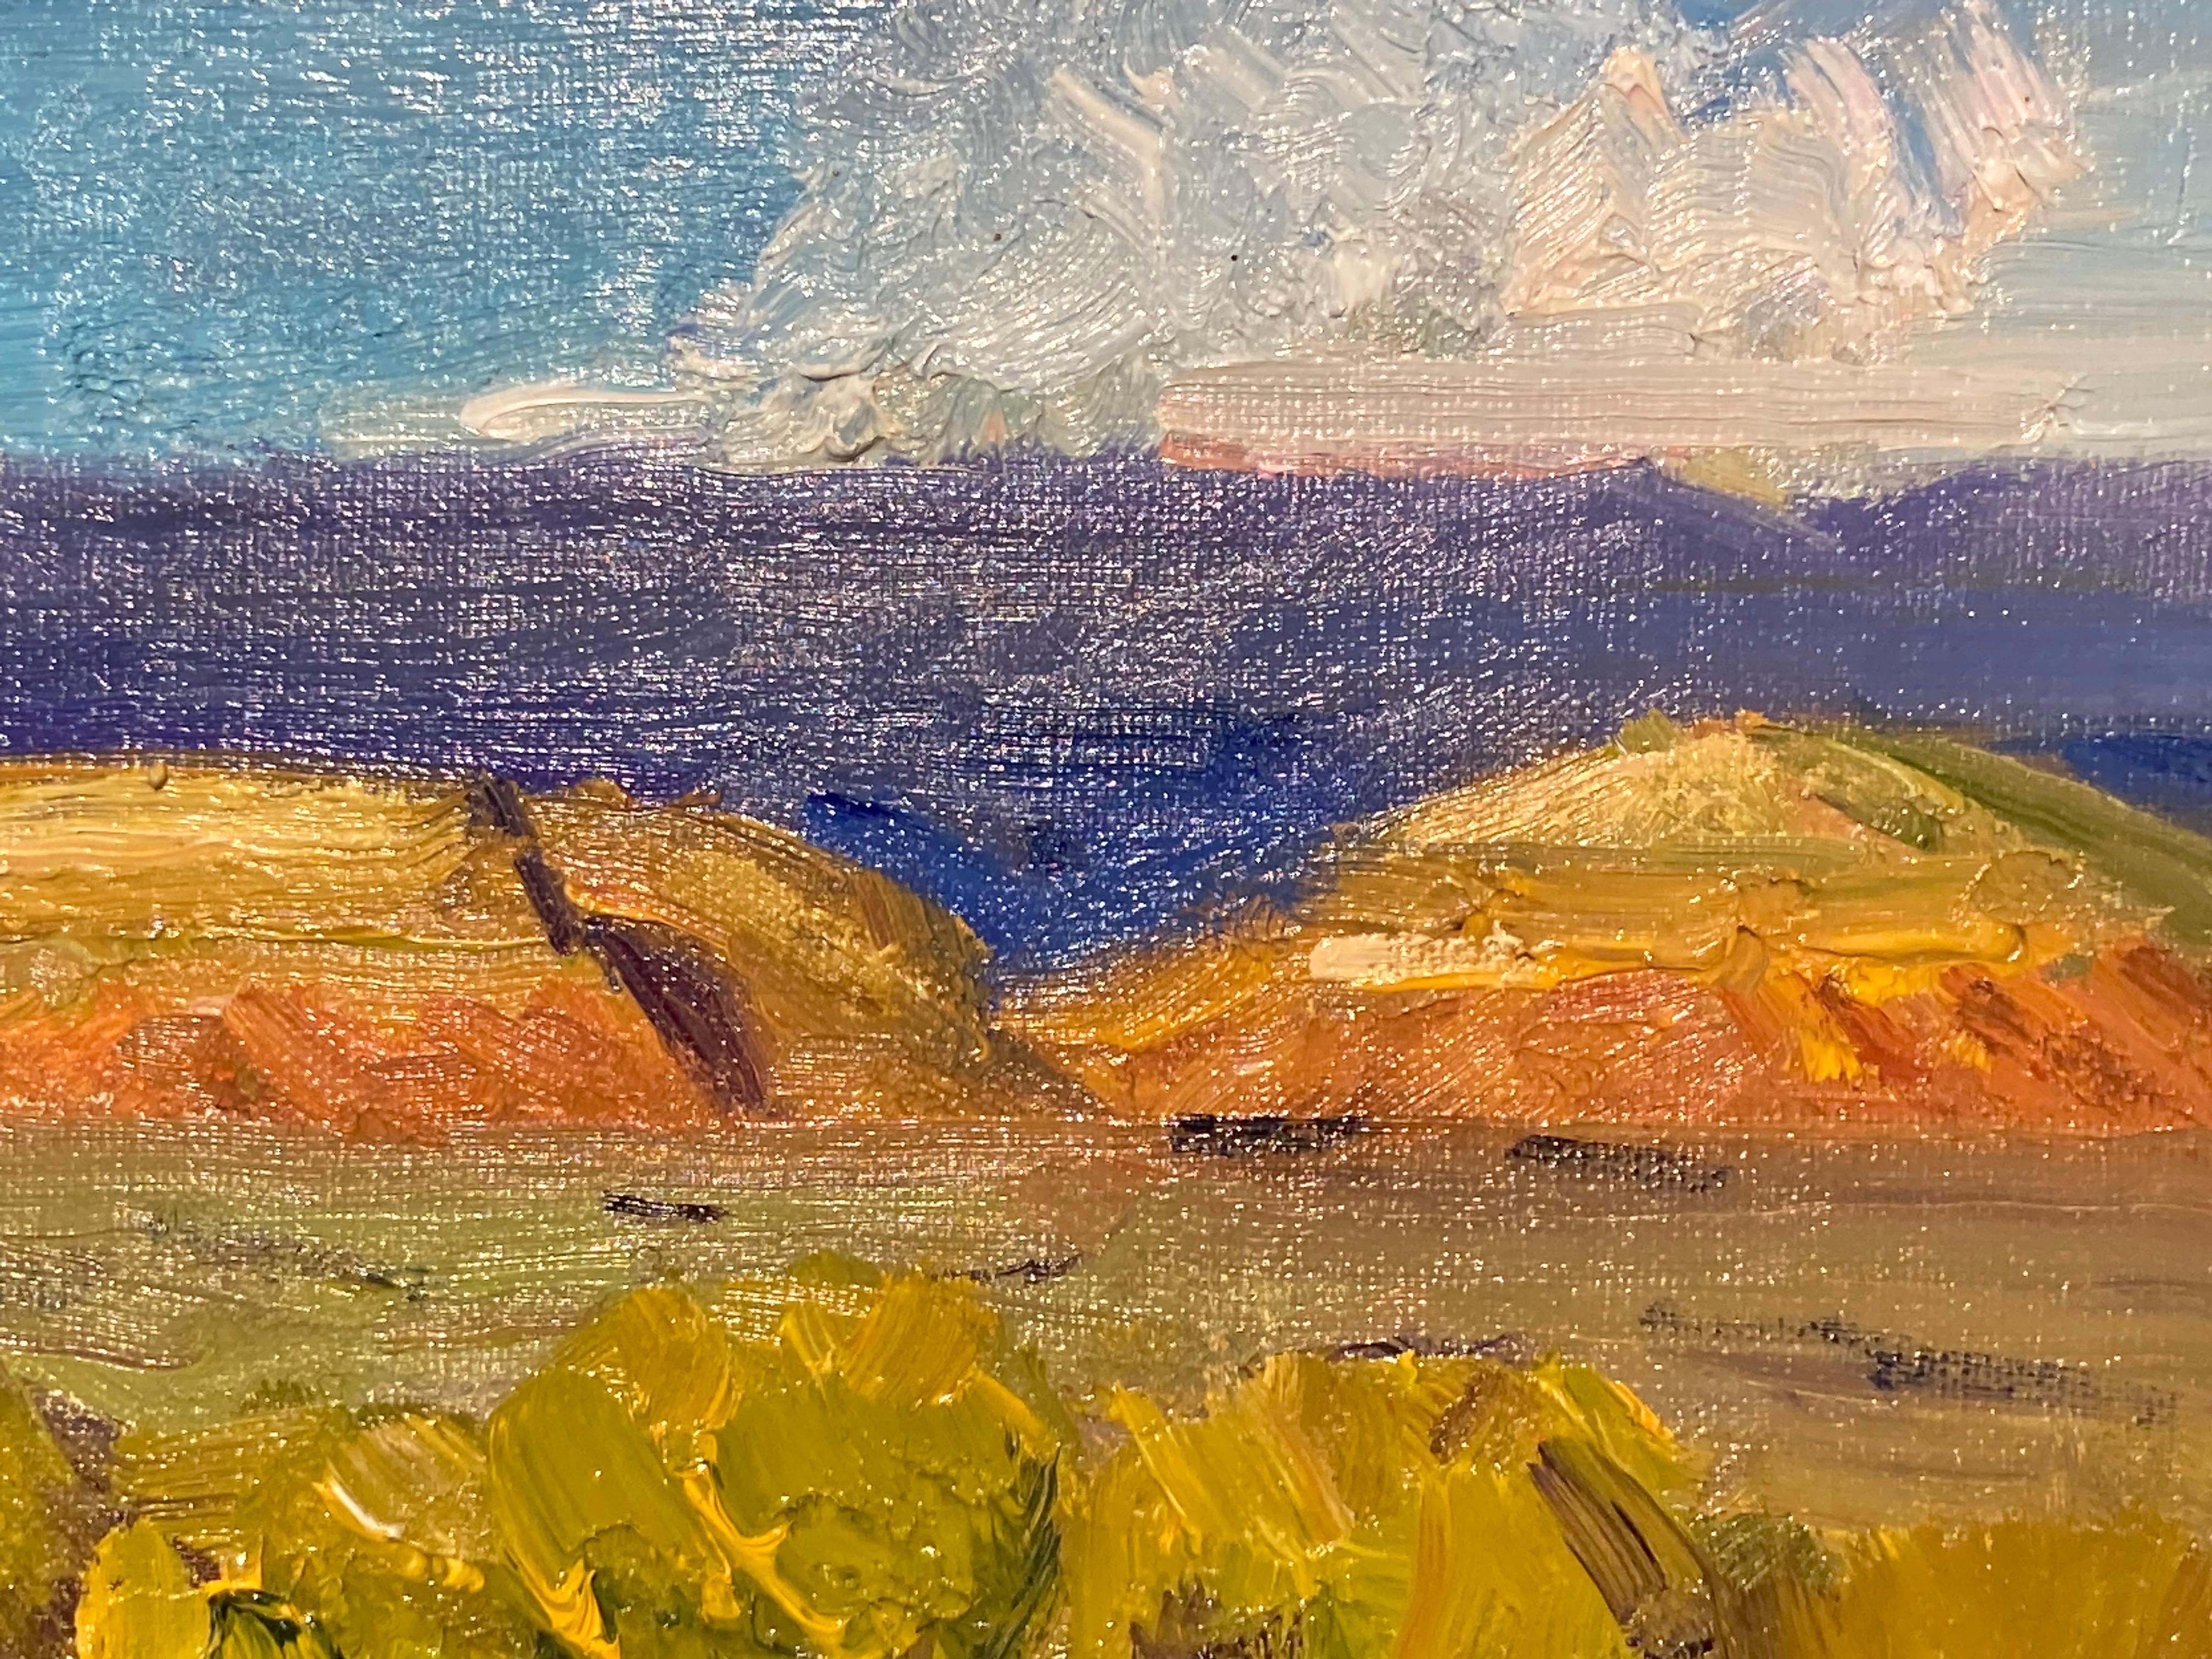 Cette huile sur toile de l'artiste James Cobb représente le paysage désertique de l'automne au Nouveau-Mexique. Au premier plan, les sommets des buissons de chamisa sont mouchetés de jaune et de vert alors qu'ils commencent à fleurir, tandis que la